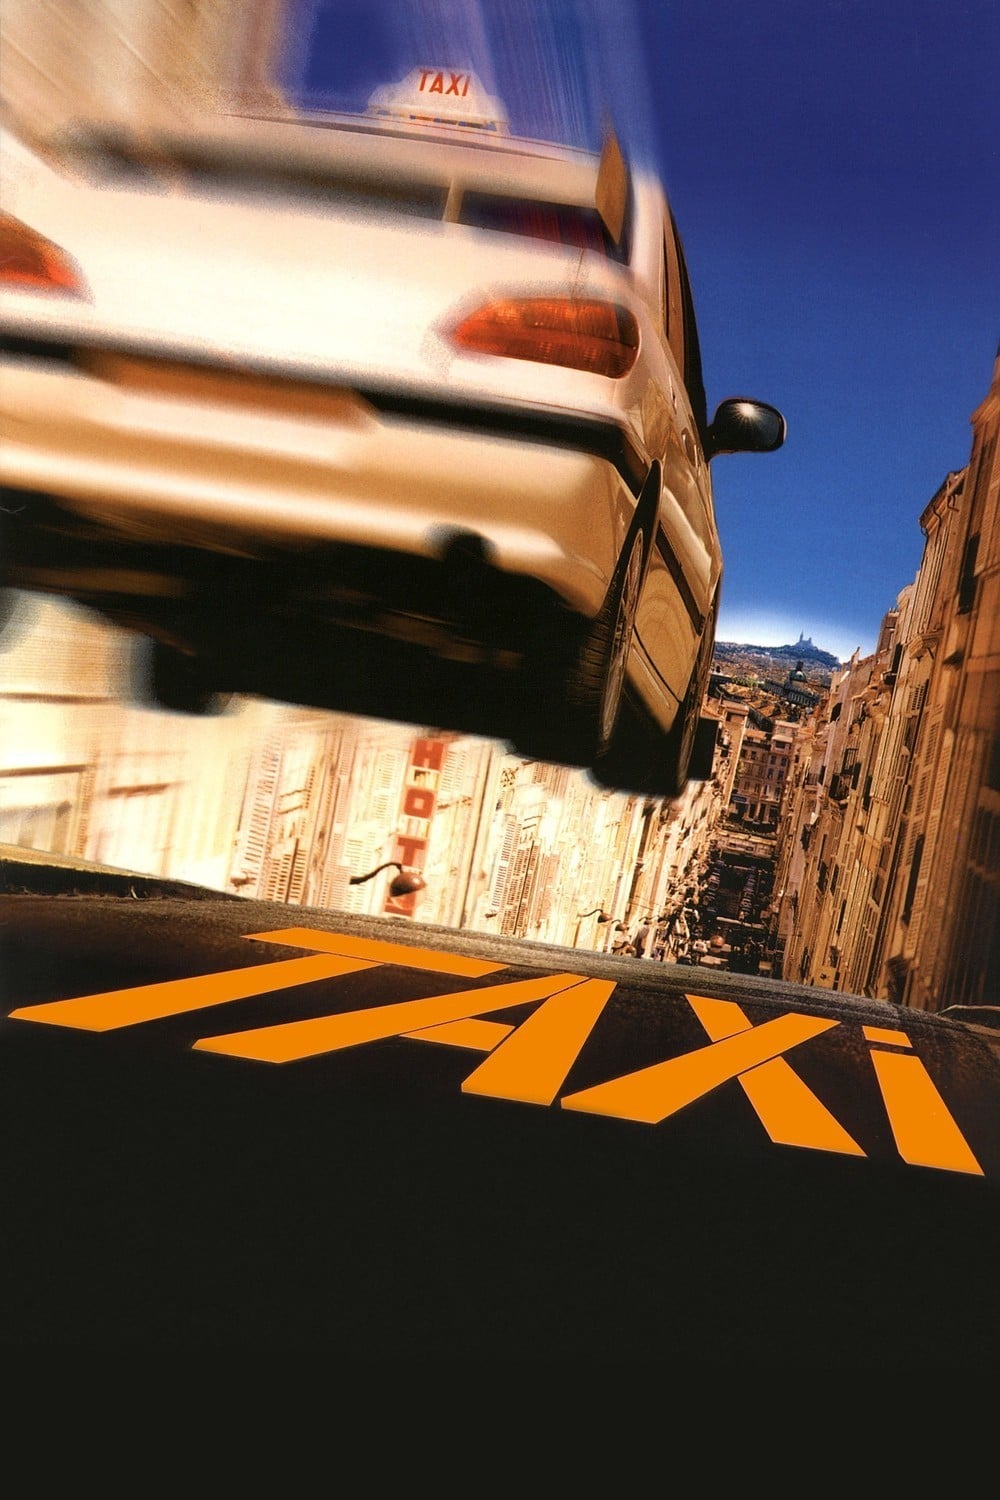 Plakat von "Taxi"